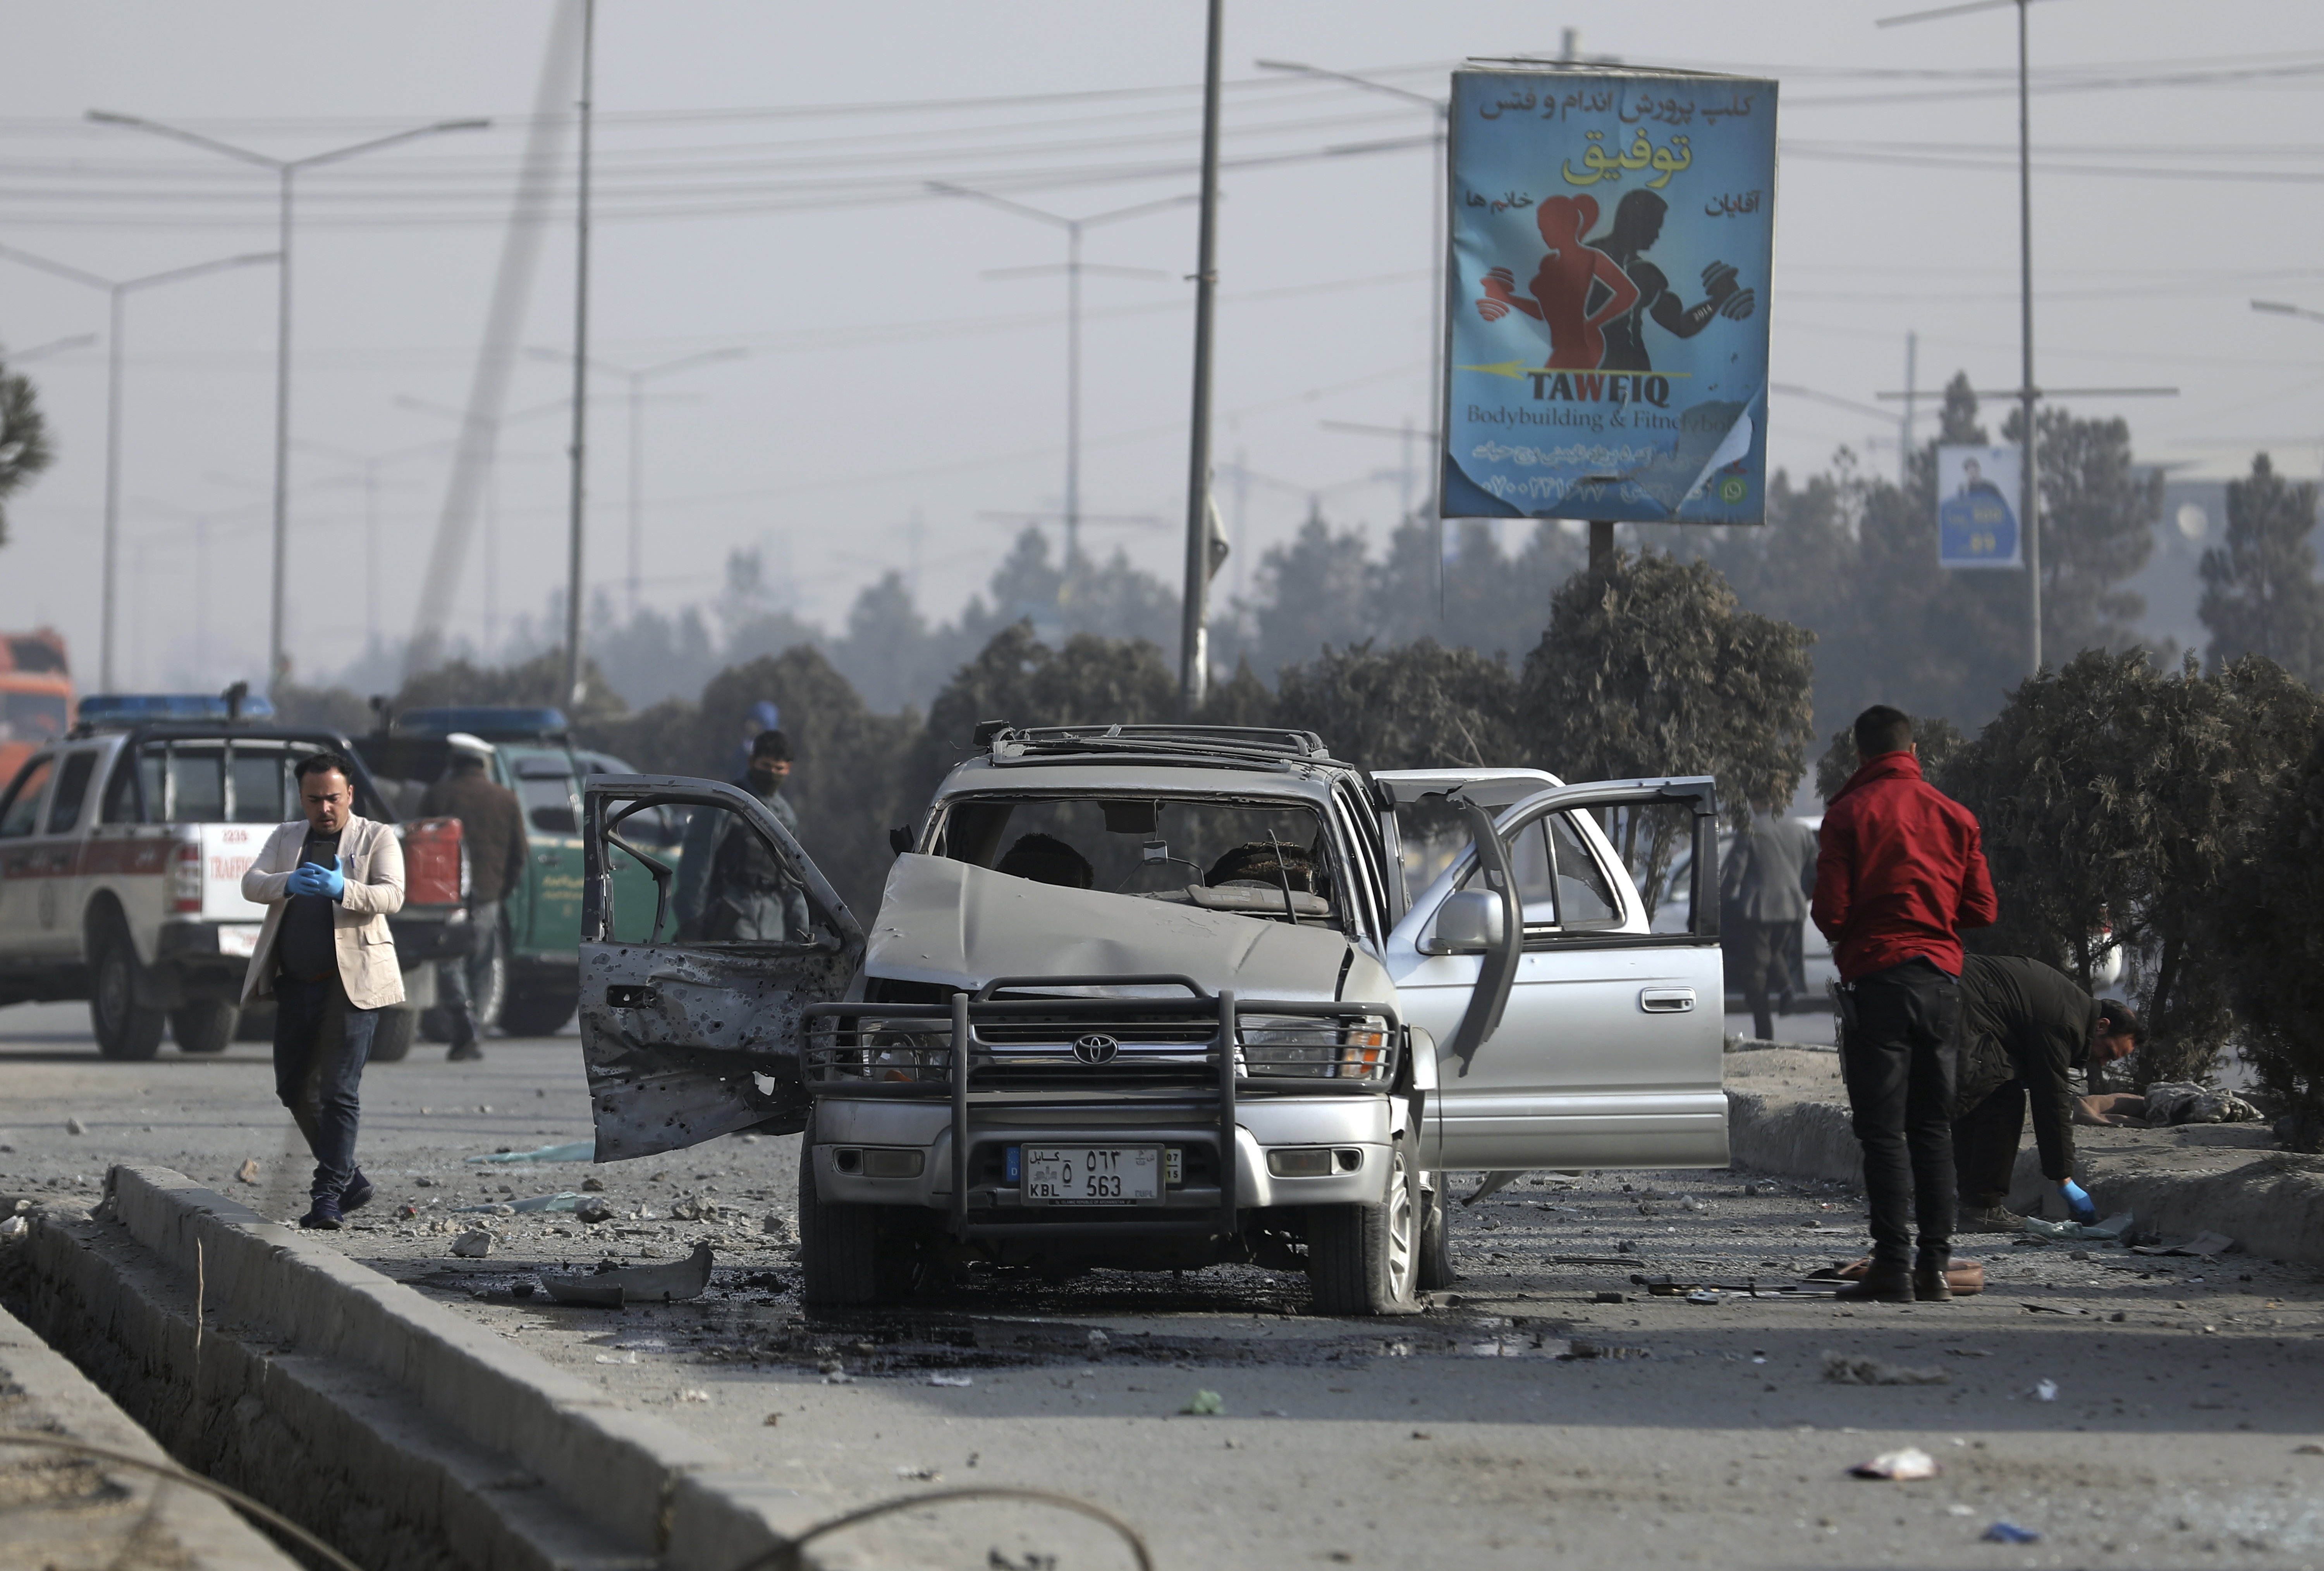 Minibuszba rejtett pokolgép robbant Afganisztánban 